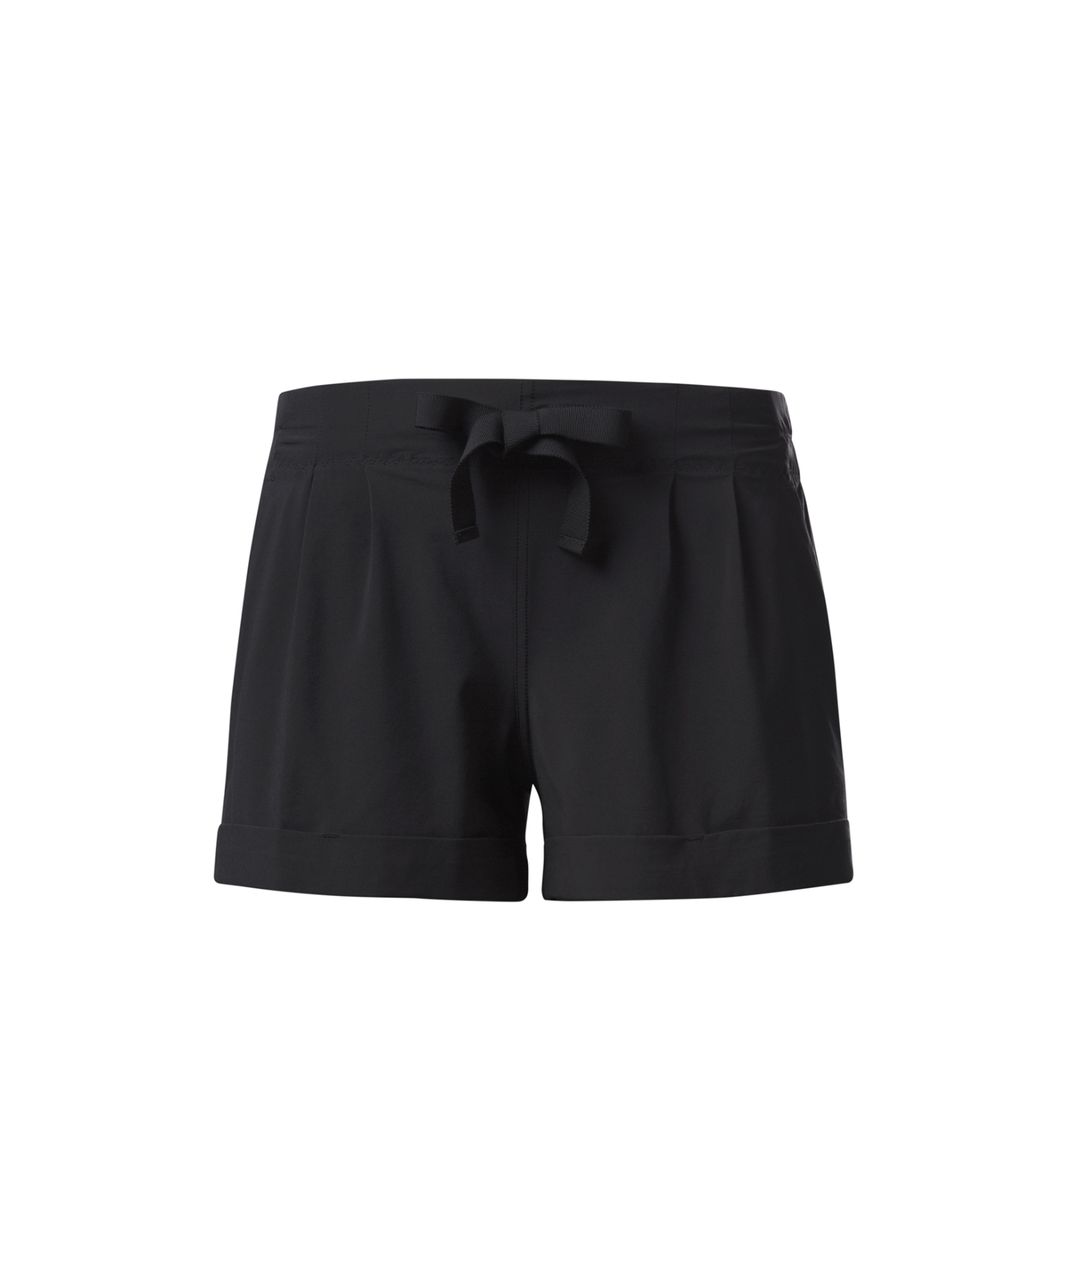 Lululemon Women's Size 4 Dottie Spring Break Away Shorts - $35 - From Emma